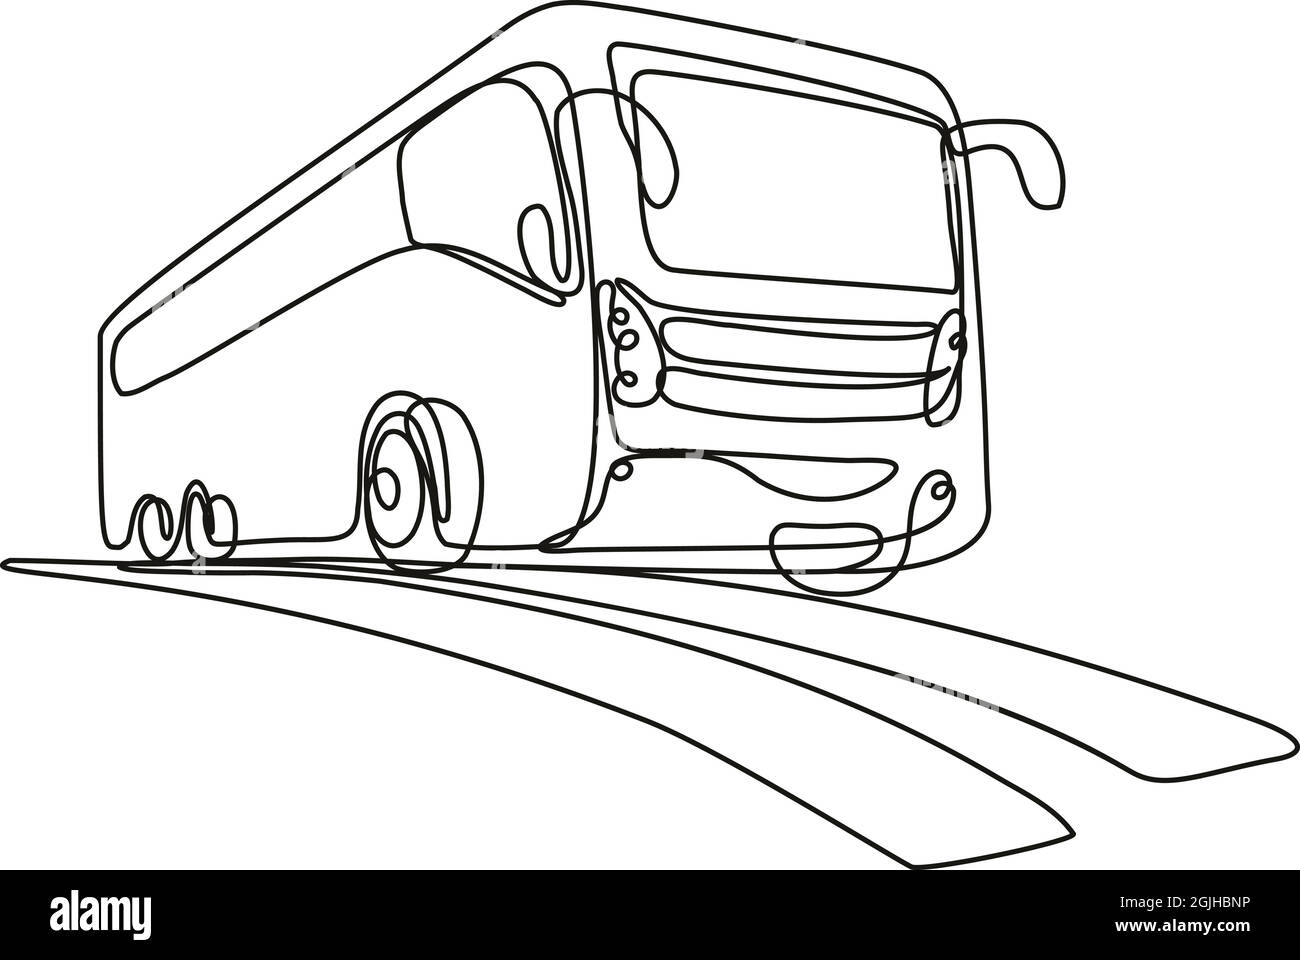 Illustrazione di disegno di linea continua di un autobus turistico o bus navetta basso angolo vista fatto in linea mono o doodle stile in bianco e nero su isolato Illustrazione Vettoriale